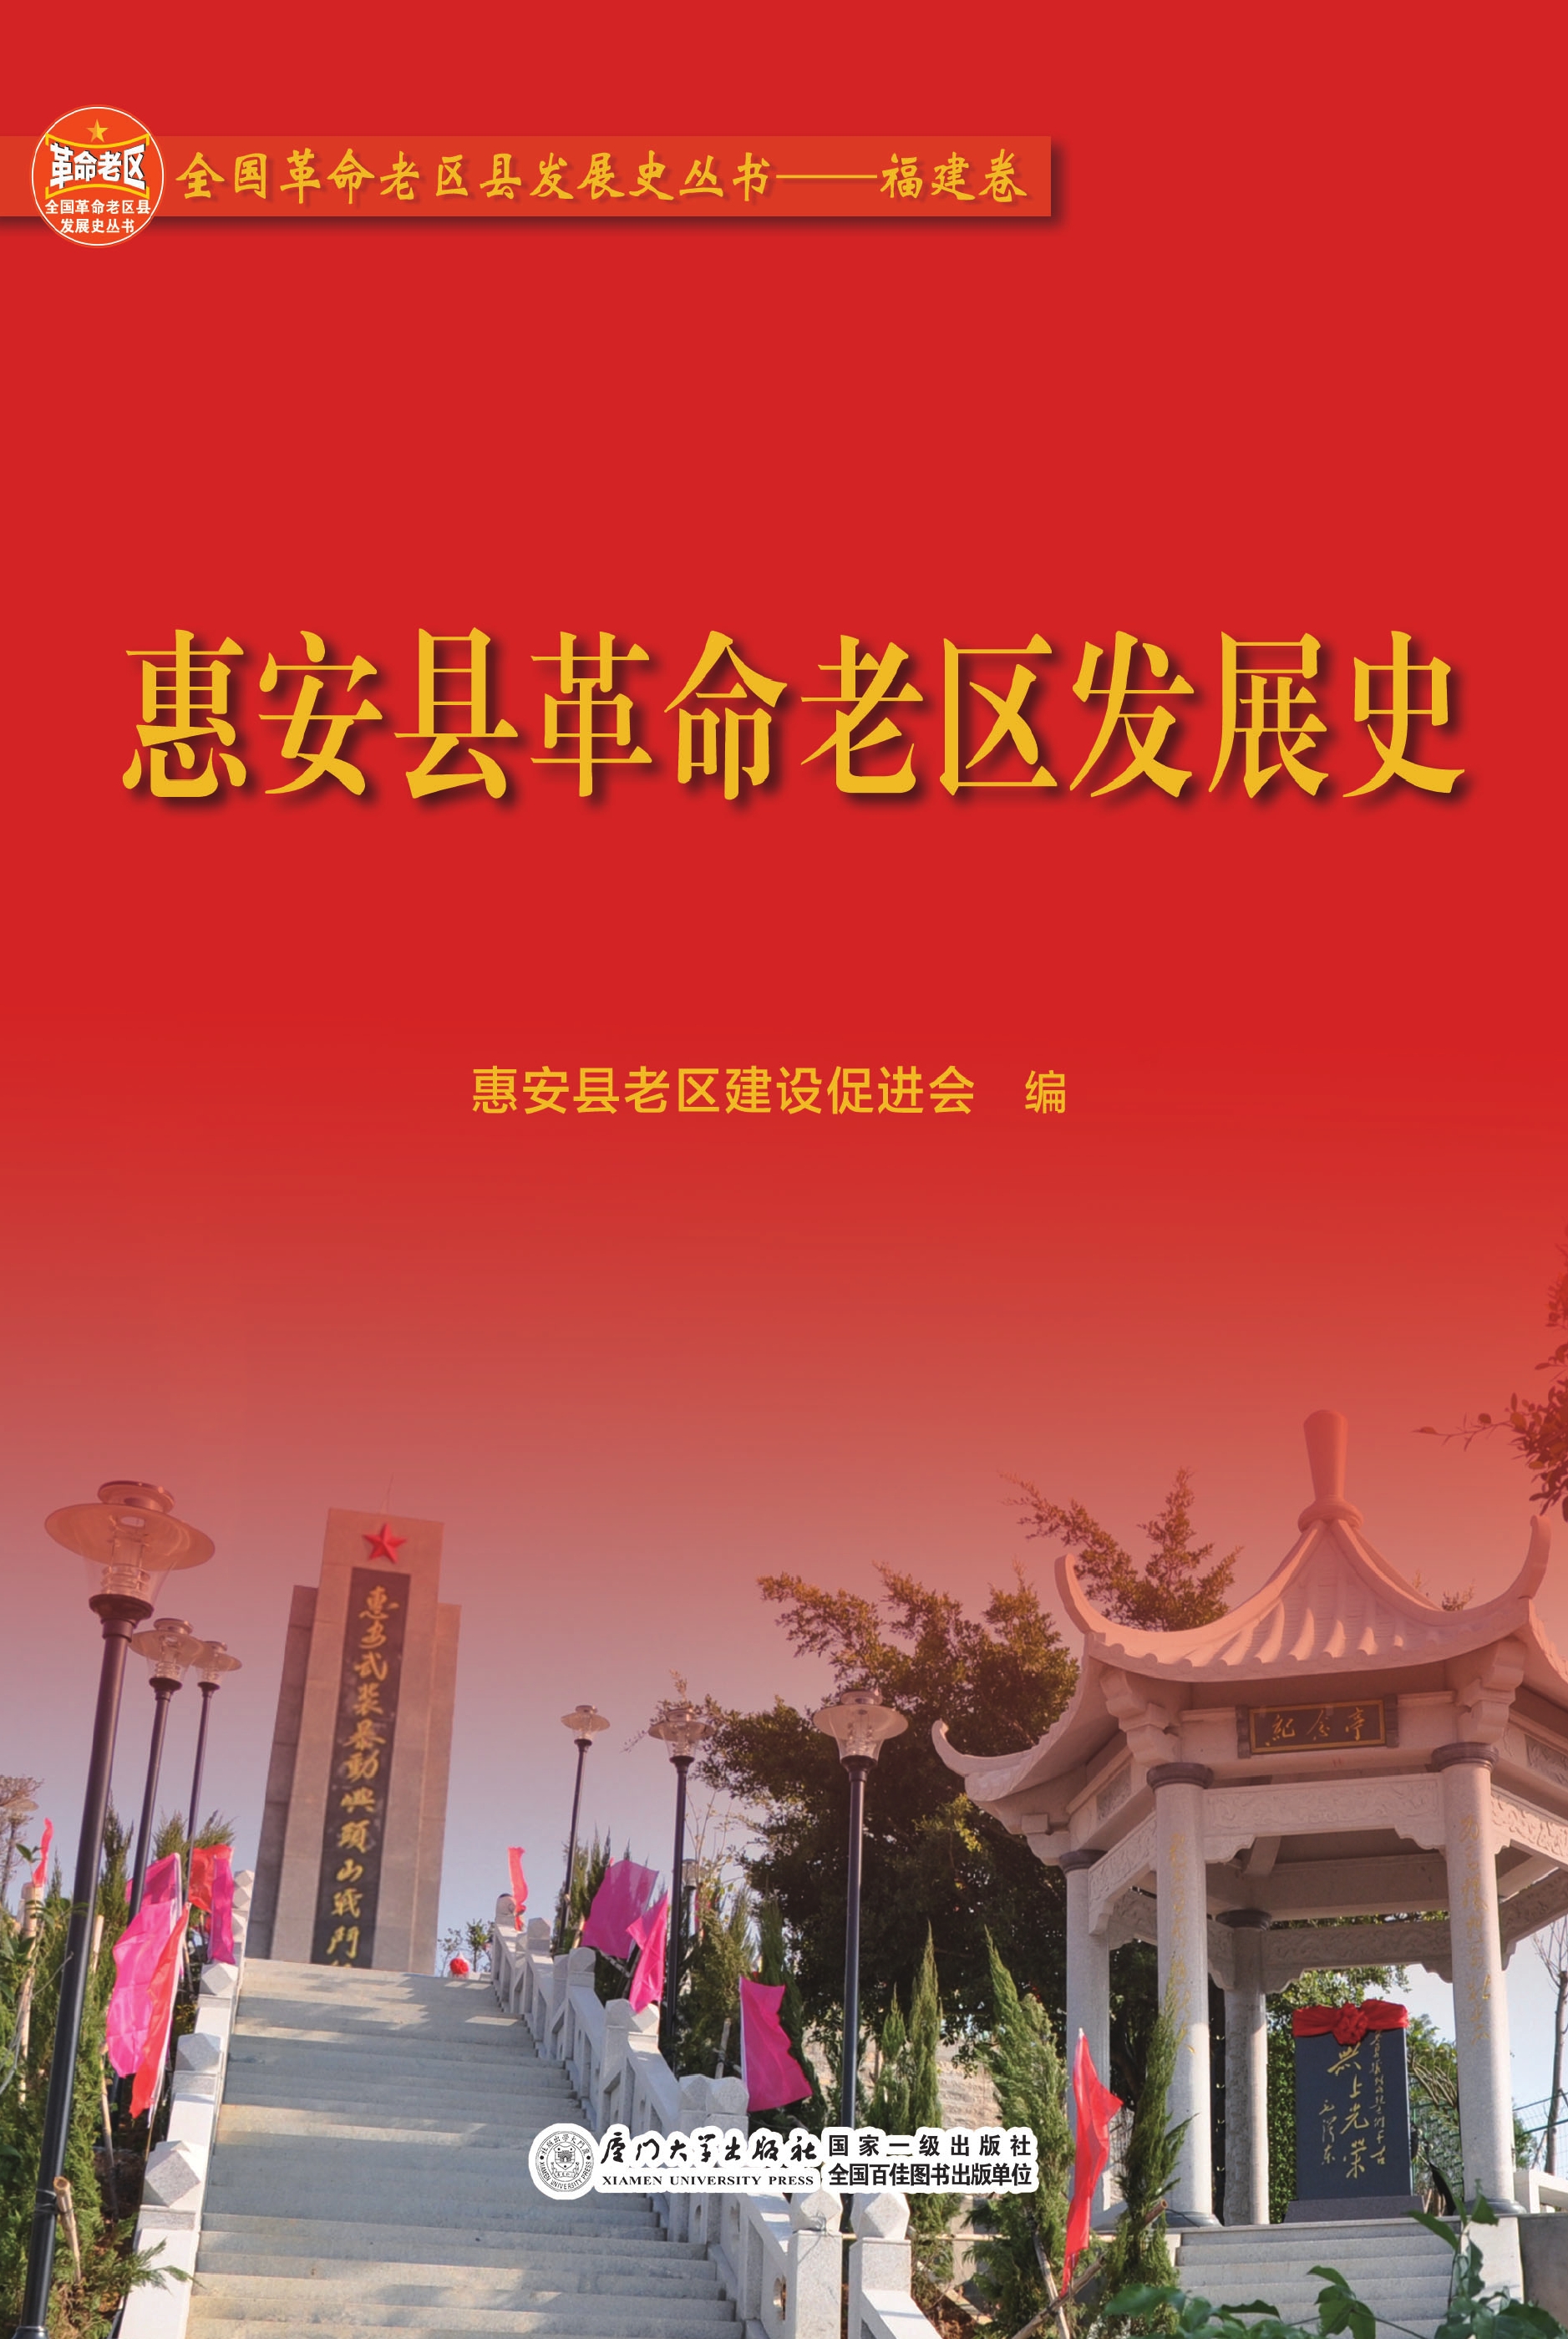 惠安县革命老区发展史